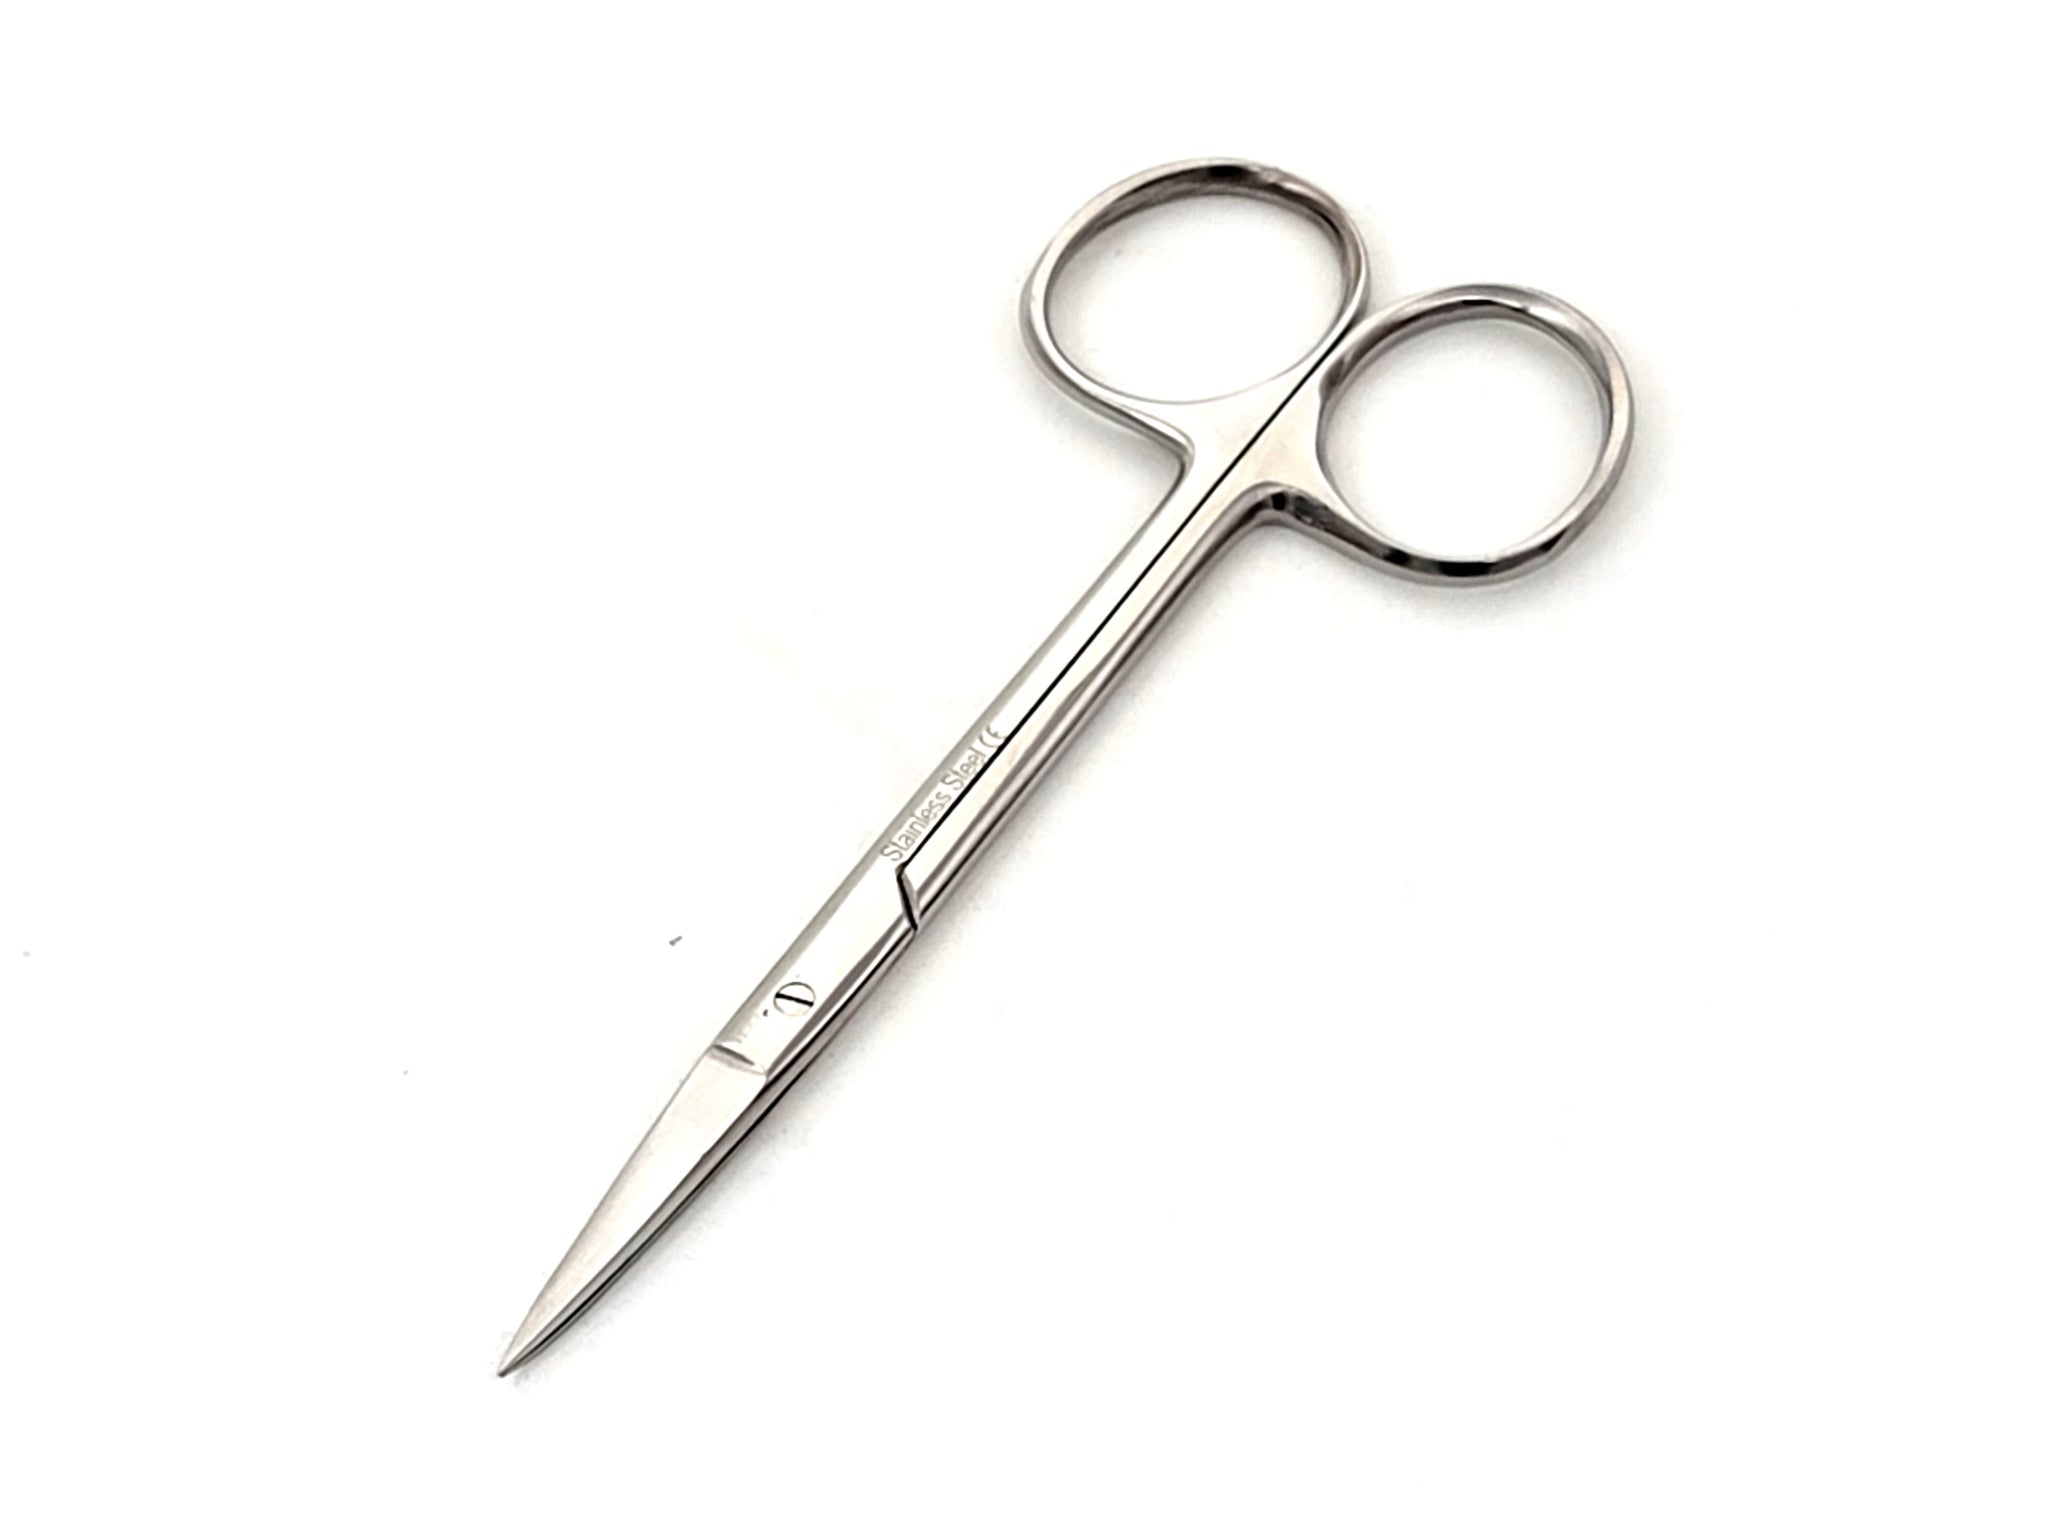 Iris Scissors Straight with Sharp Tip